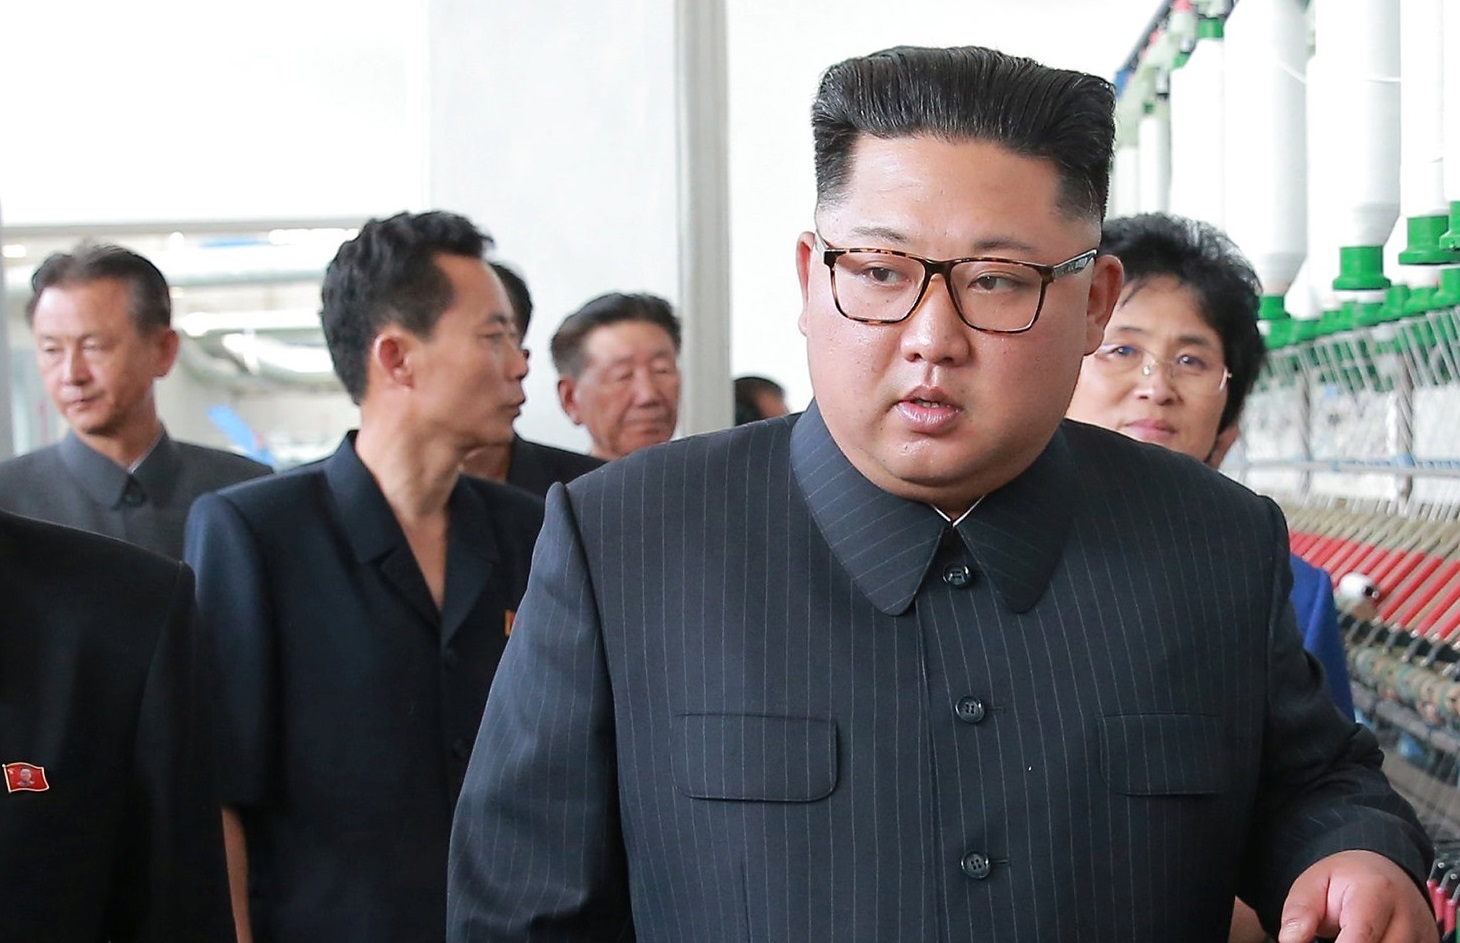 راز جای سوزن روی دست رهبر کره شمالی چیست؟ +عکس